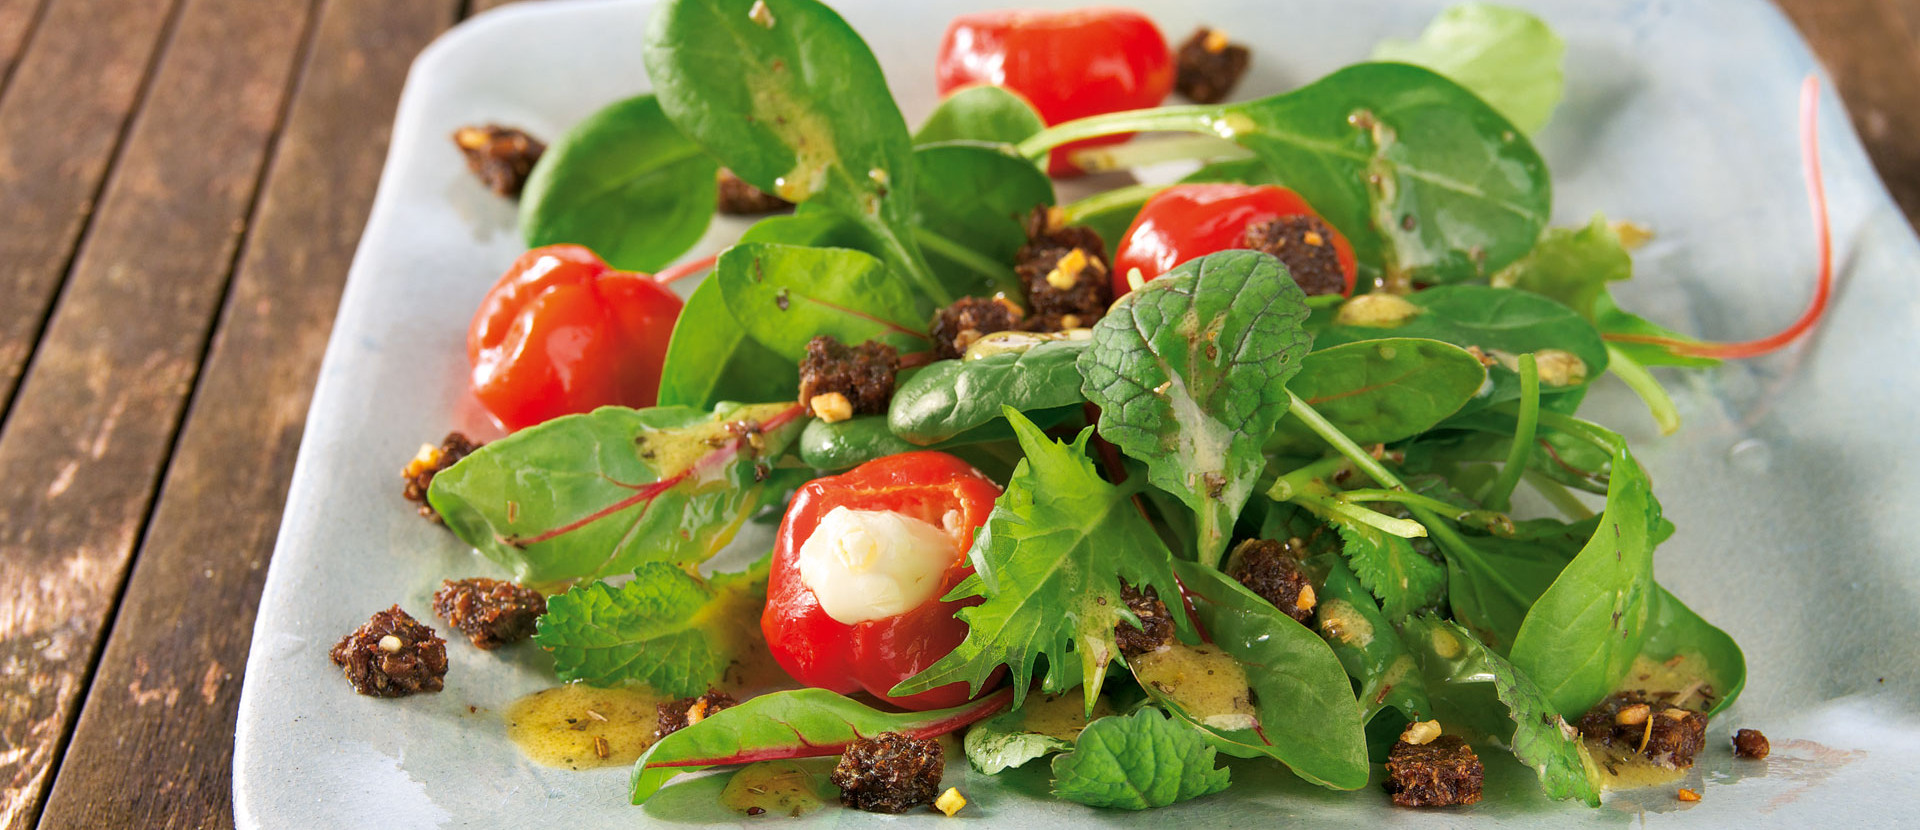 Salat mit Kirschpaprika und Pumpernickel Croutons